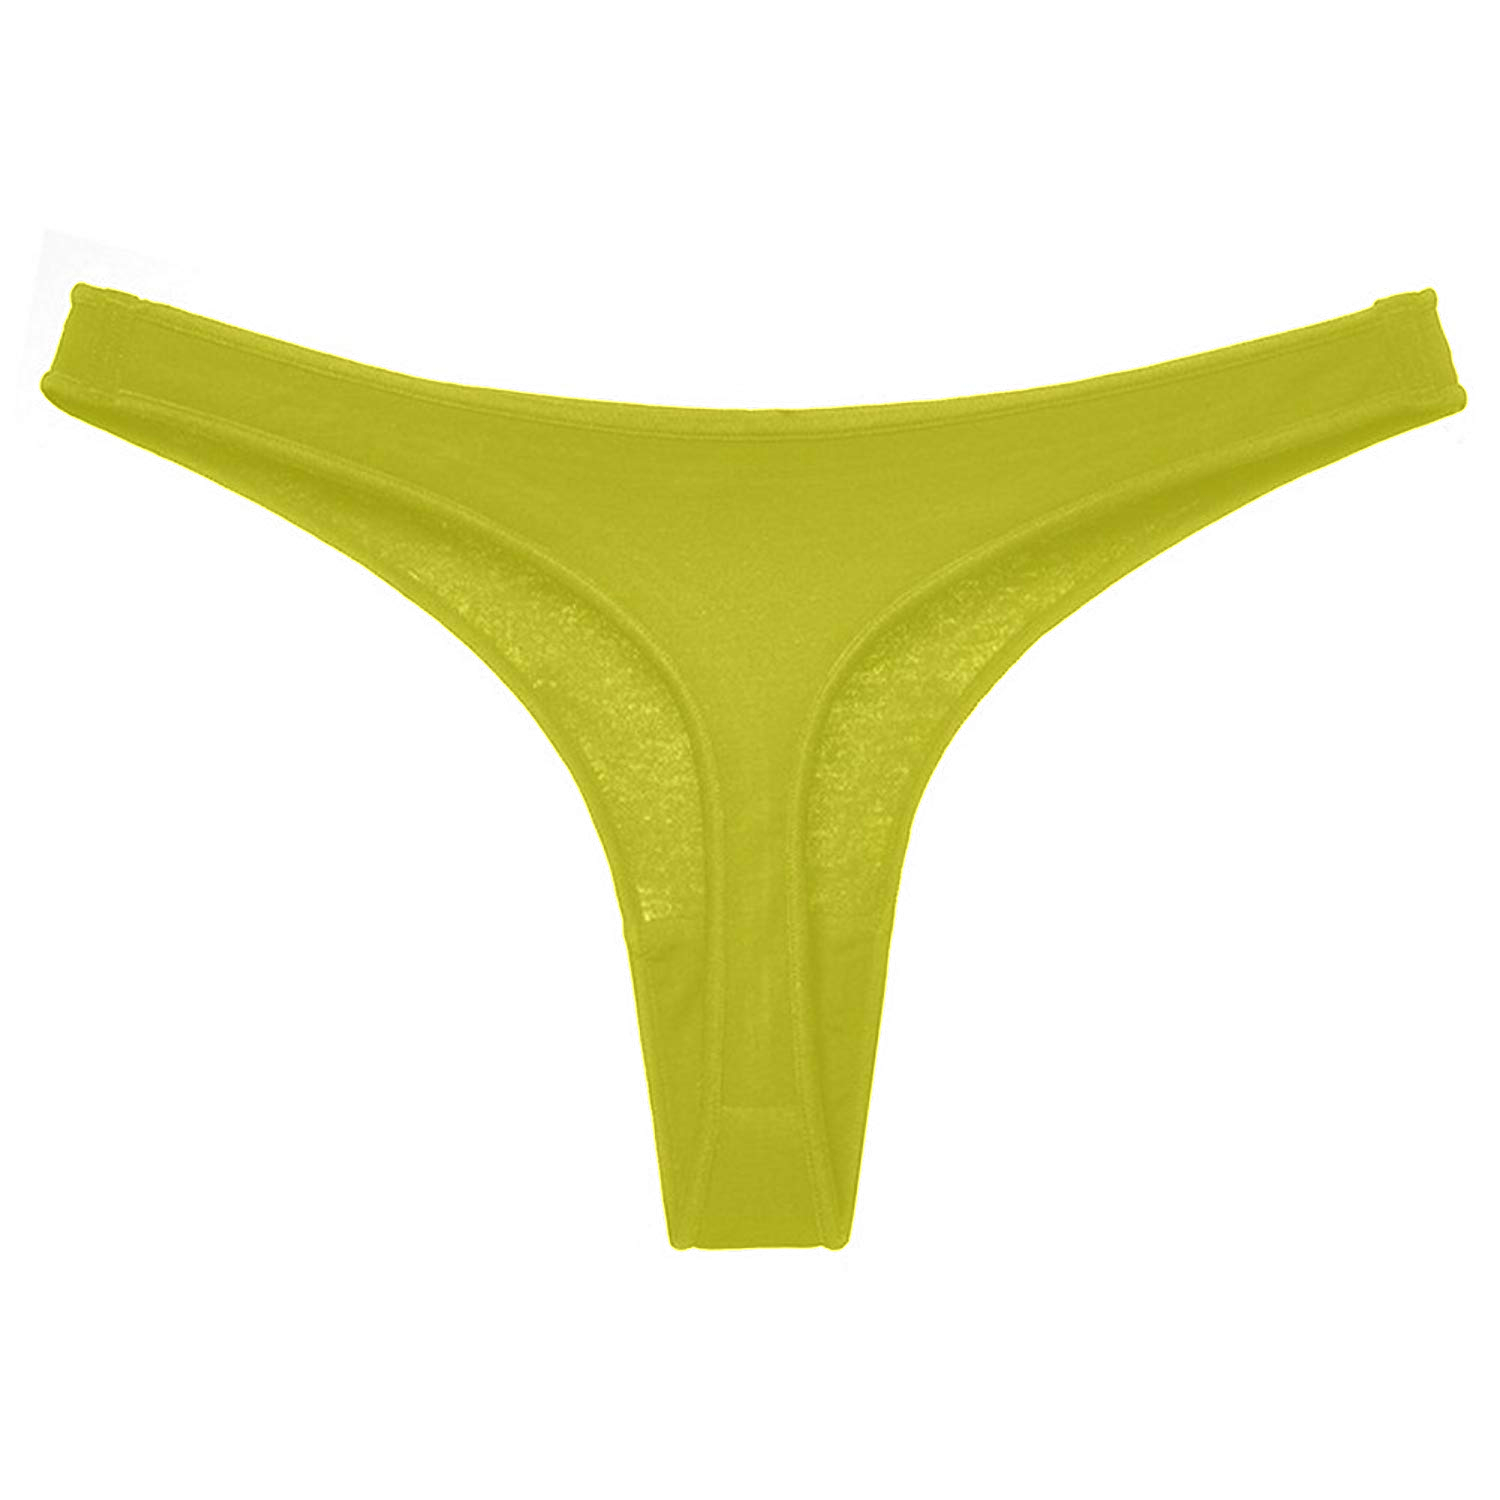 Buy The Blazze Women's Thong Low Rise Sexy Solid G-String Thong Bikini ...